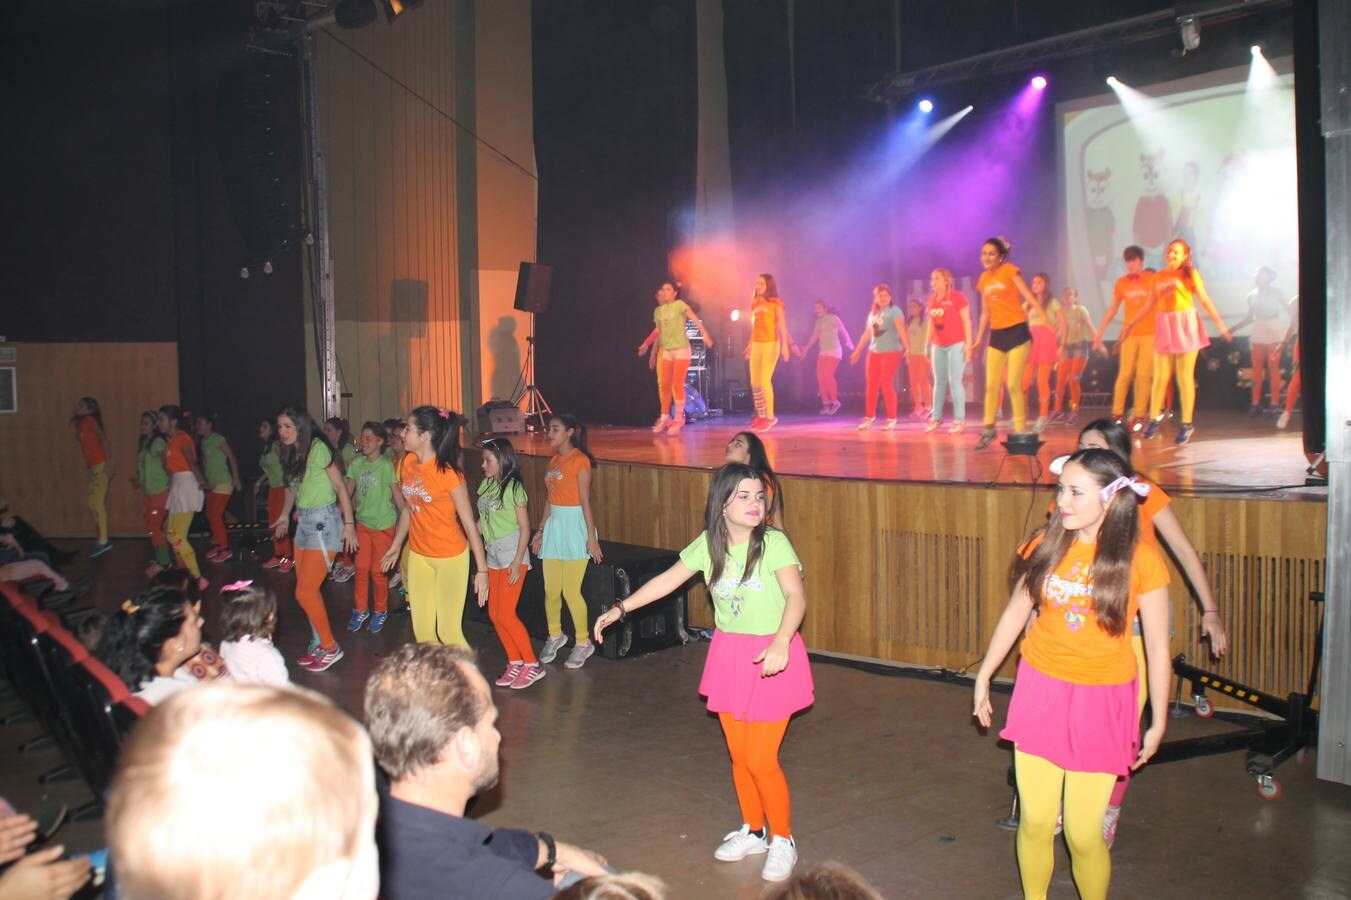 Música, colorido, luces y efectos especiales invitaron a disfrutar de la fiesta de Trouppelandia